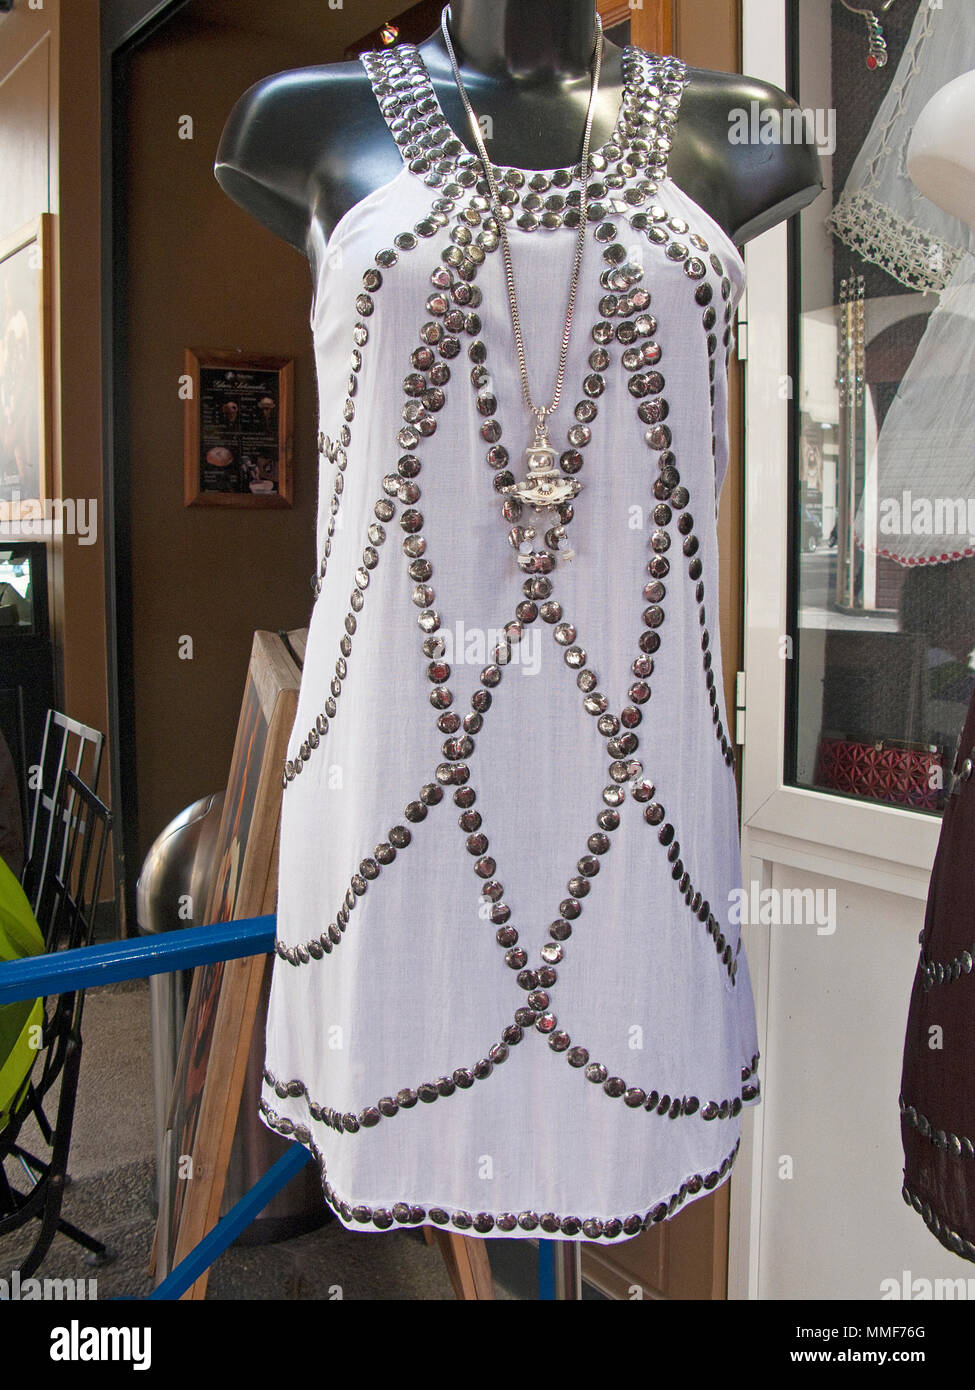 Kleid mit Strass in einem Fashion Shop in einer Einkaufsstraße in der Nähe der Place Masséna, Nizza, Südfrankreich, Alpes-de-Haute-Provence, Côte d'Azur, Frankreich, Europa Stockfoto